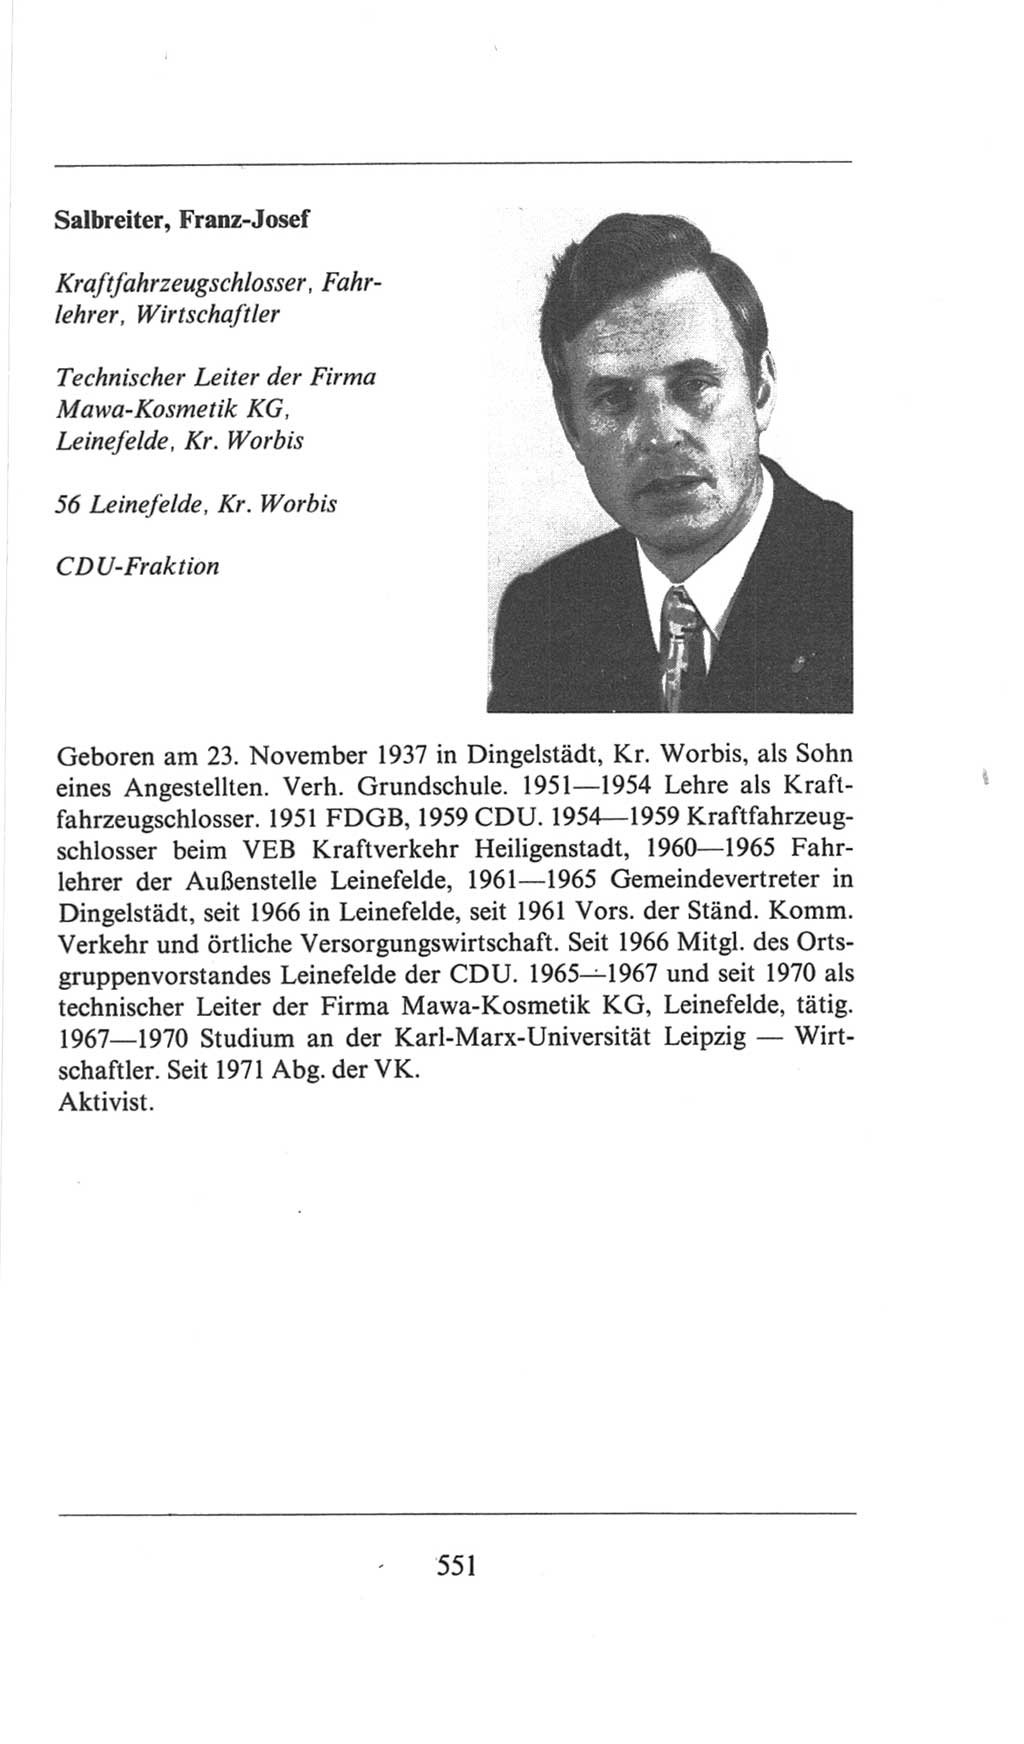 Volkskammer (VK) der Deutschen Demokratischen Republik (DDR), 6. Wahlperiode 1971-1976, Seite 551 (VK. DDR 6. WP. 1971-1976, S. 551)